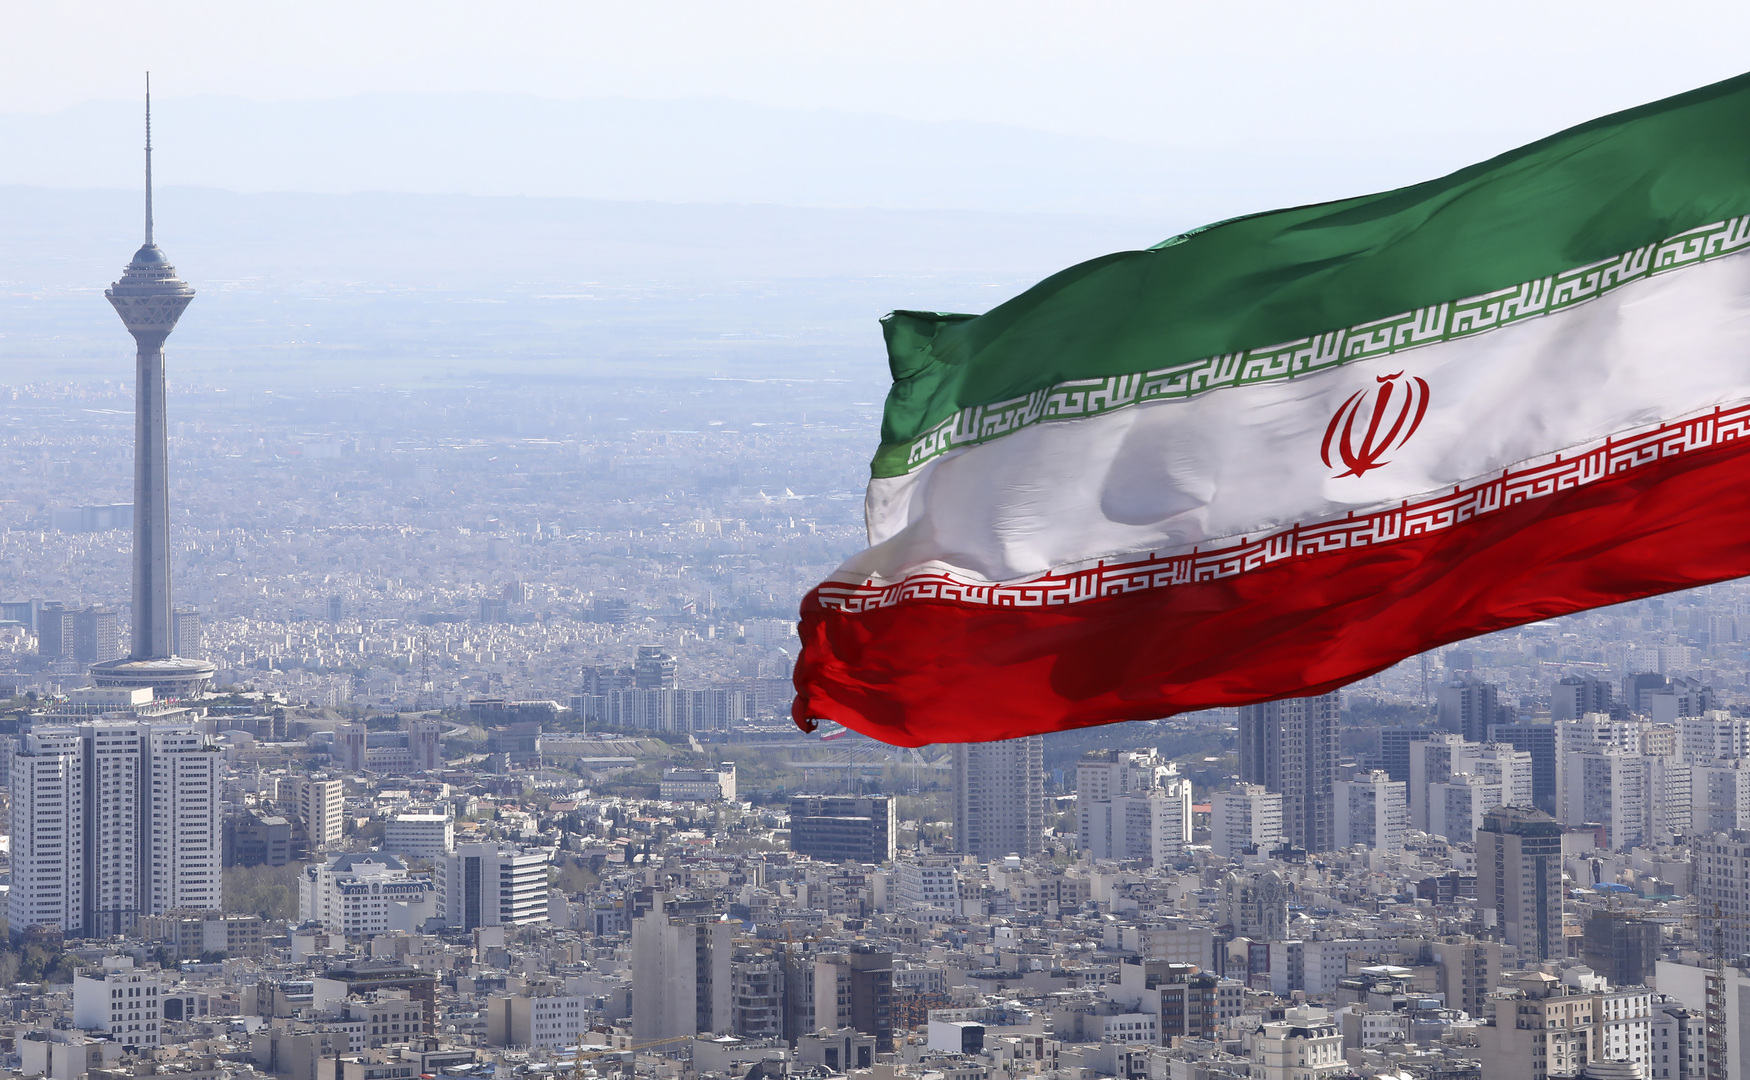 إيران تعلن مقتل موظف بوزارة الدفاع أثناء تأدية مهامه بعد أقل من يوم على مقتل أحد منتسبي الحرس الثوري